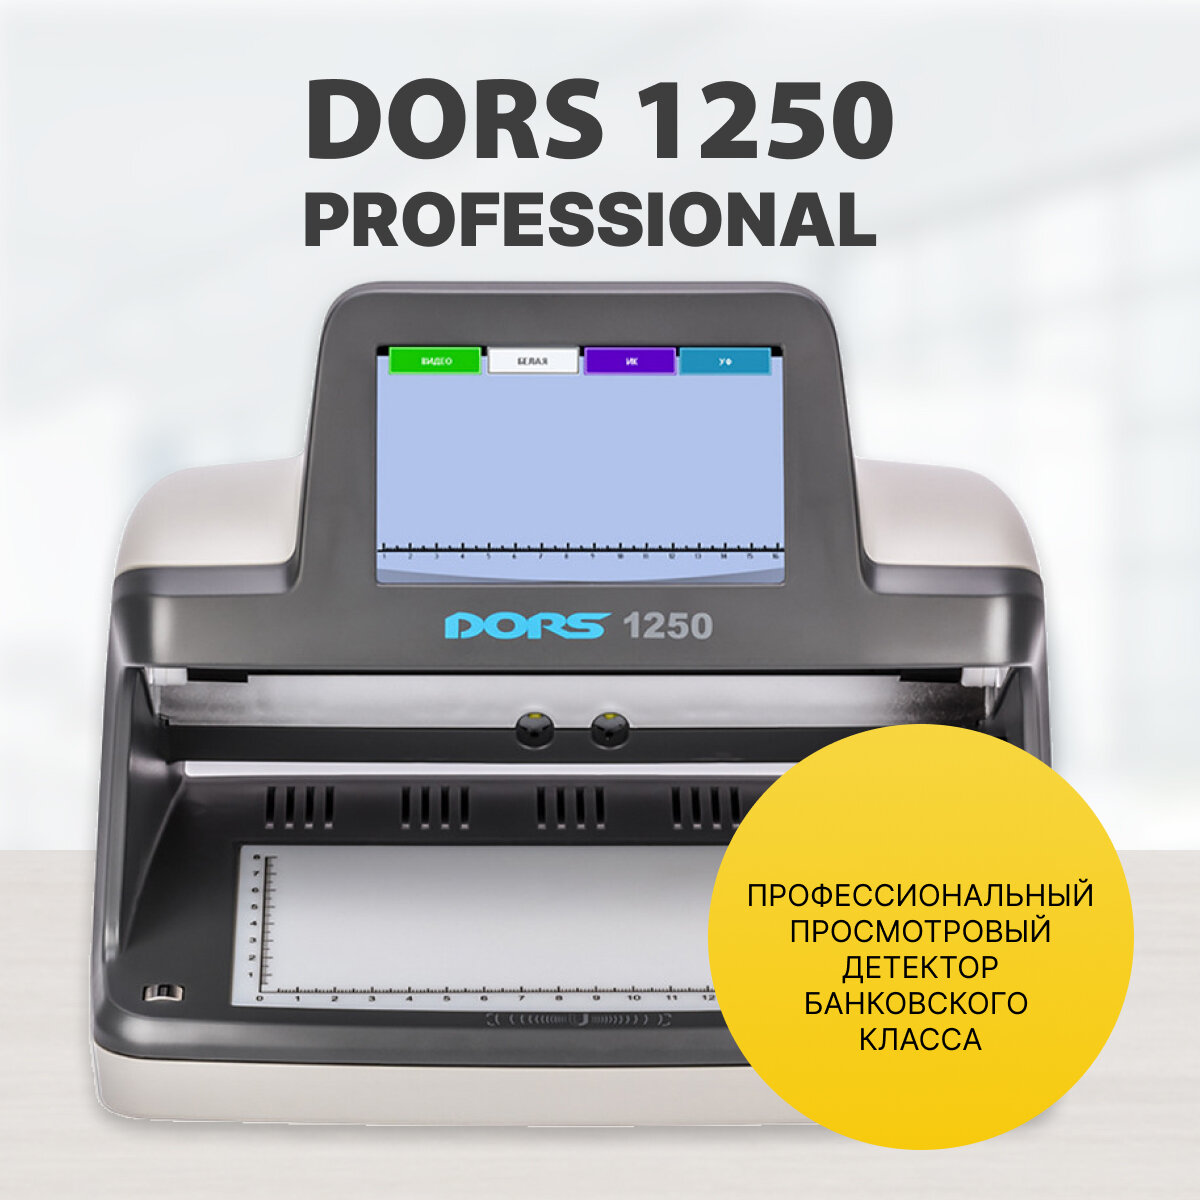 DORS 1250 Professional детектор просмотровый универсальный